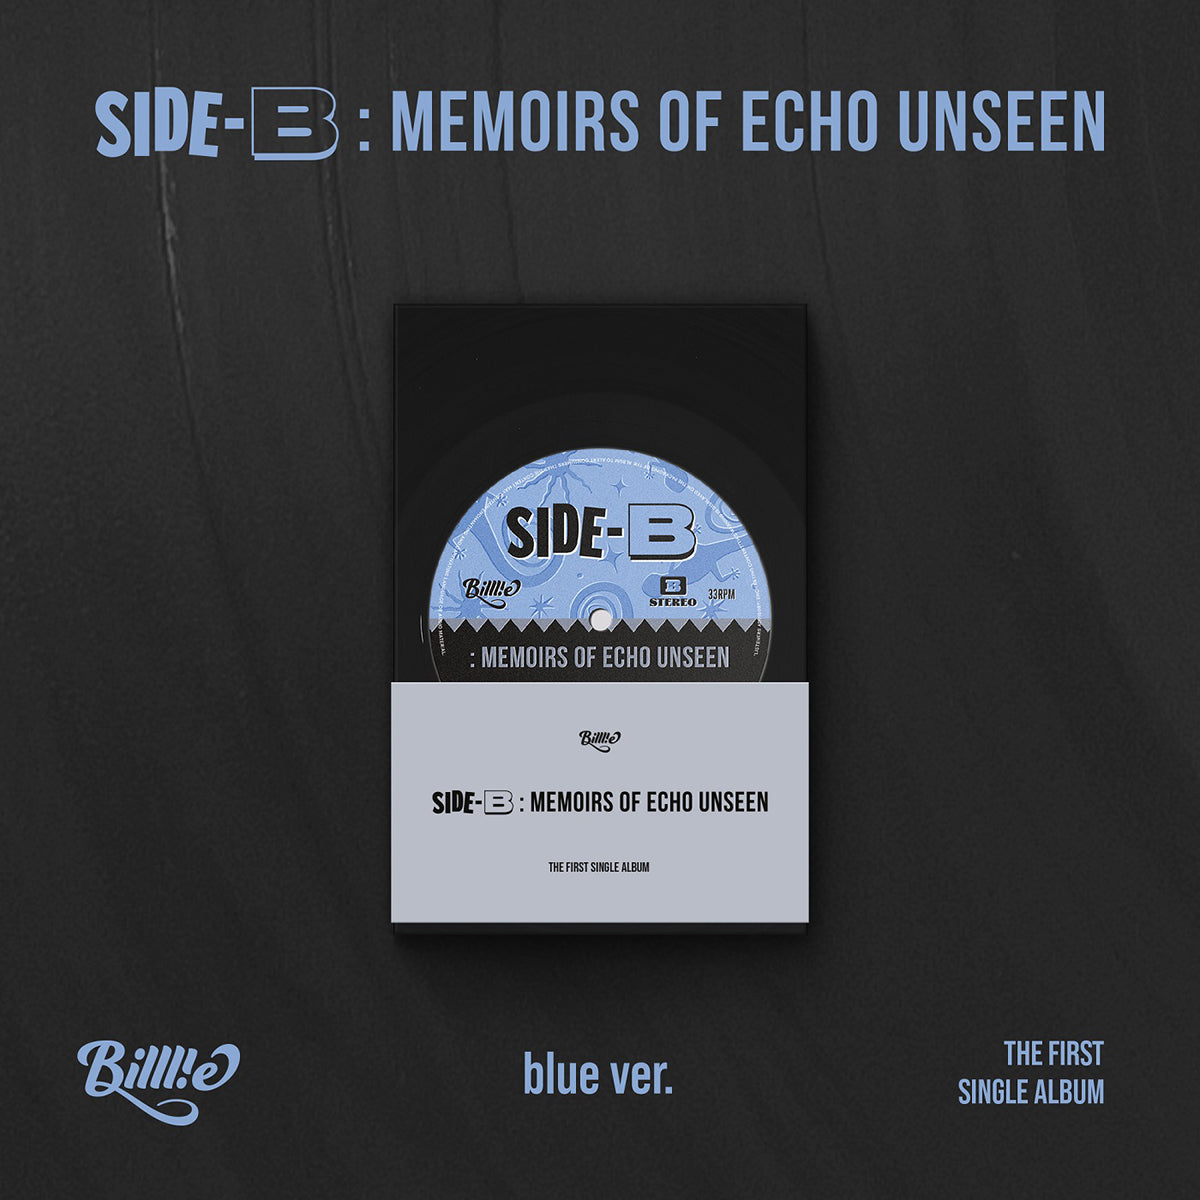 Billlie - side-B : memoirs of echo unseen (POCA ALBUM)